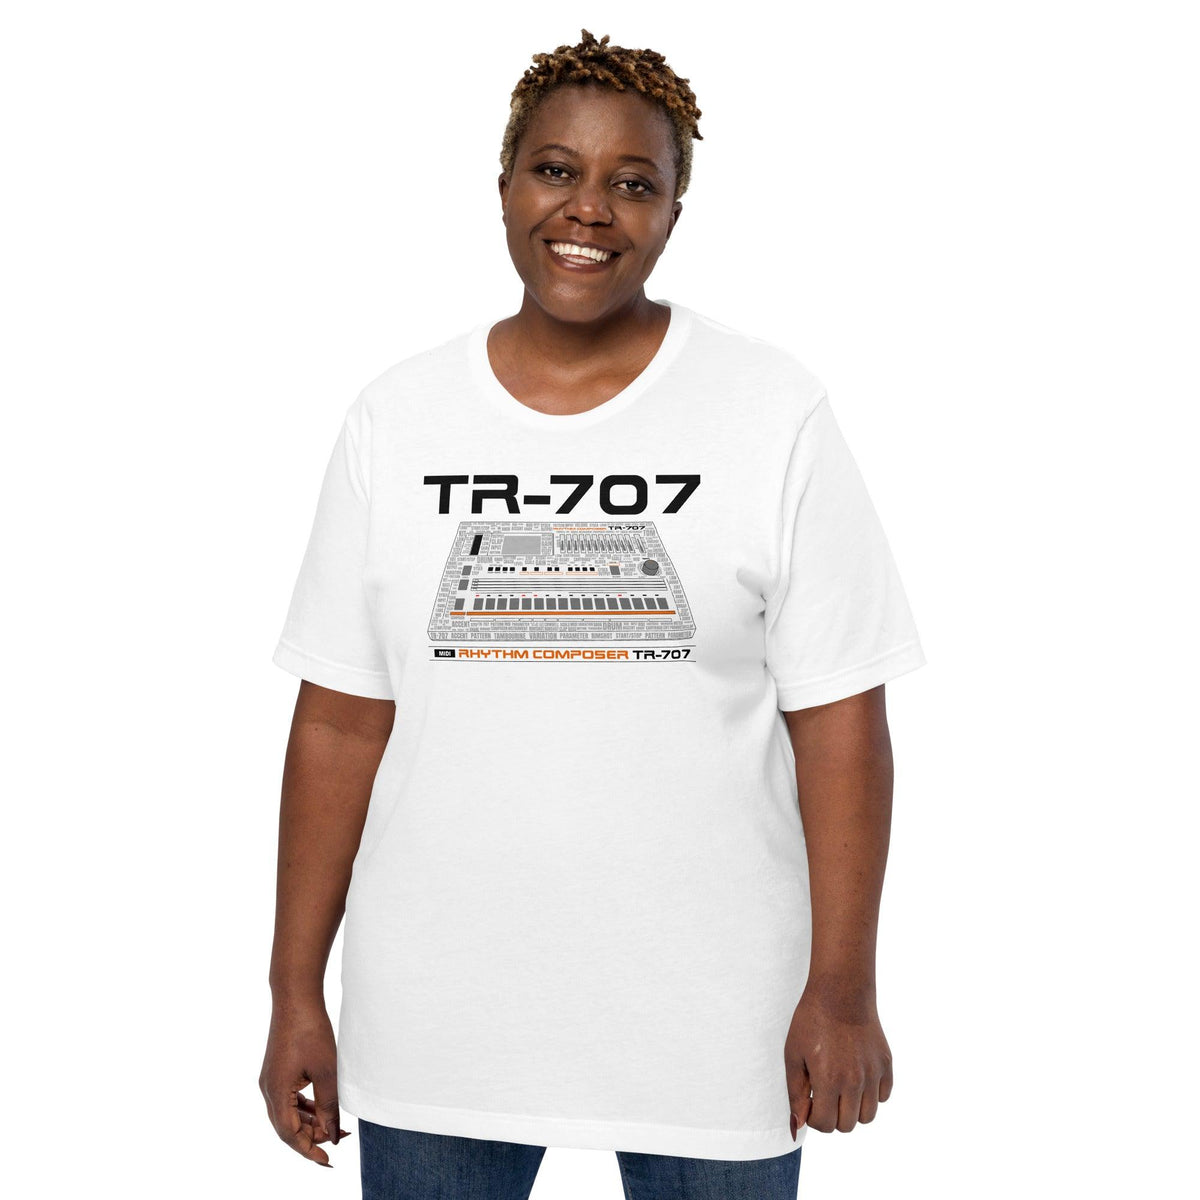 Roland® TR-707 Inspired Design | Vintage Drum Machine | TR707 Word Cloud Unisex T-Shirt (XS-5XL) - Tedeschi Studio, LLC.